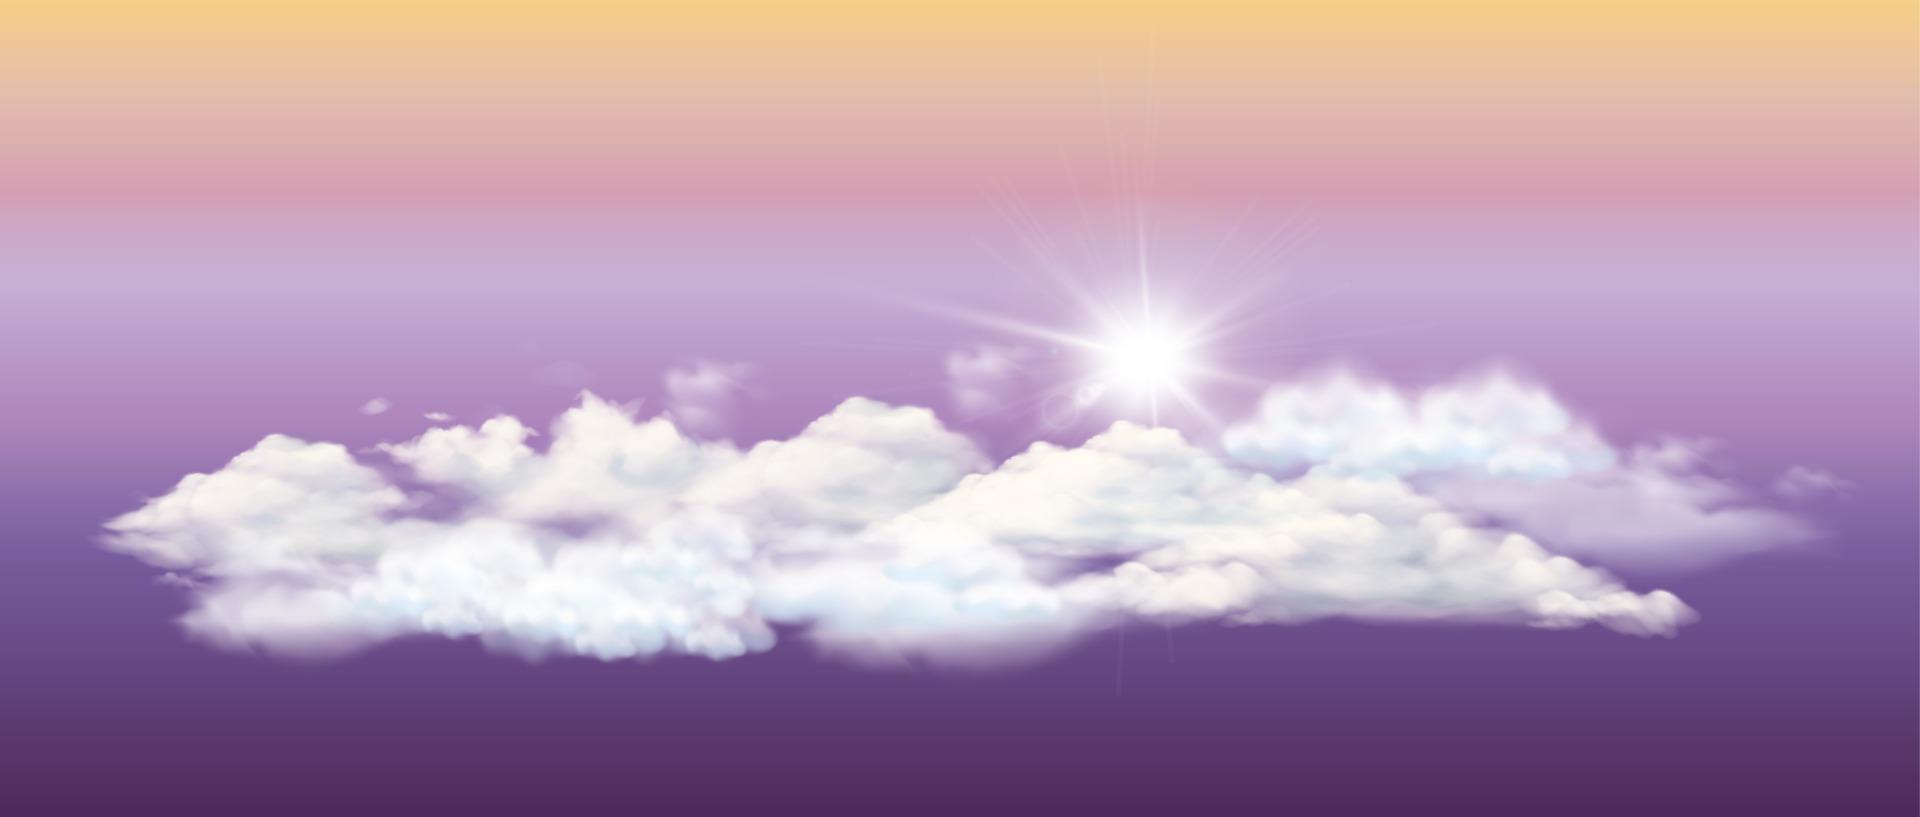 vit moln och Sol, 3d illustration av naturlig landskap med attraktiv himmel färger, redigerbar vektor